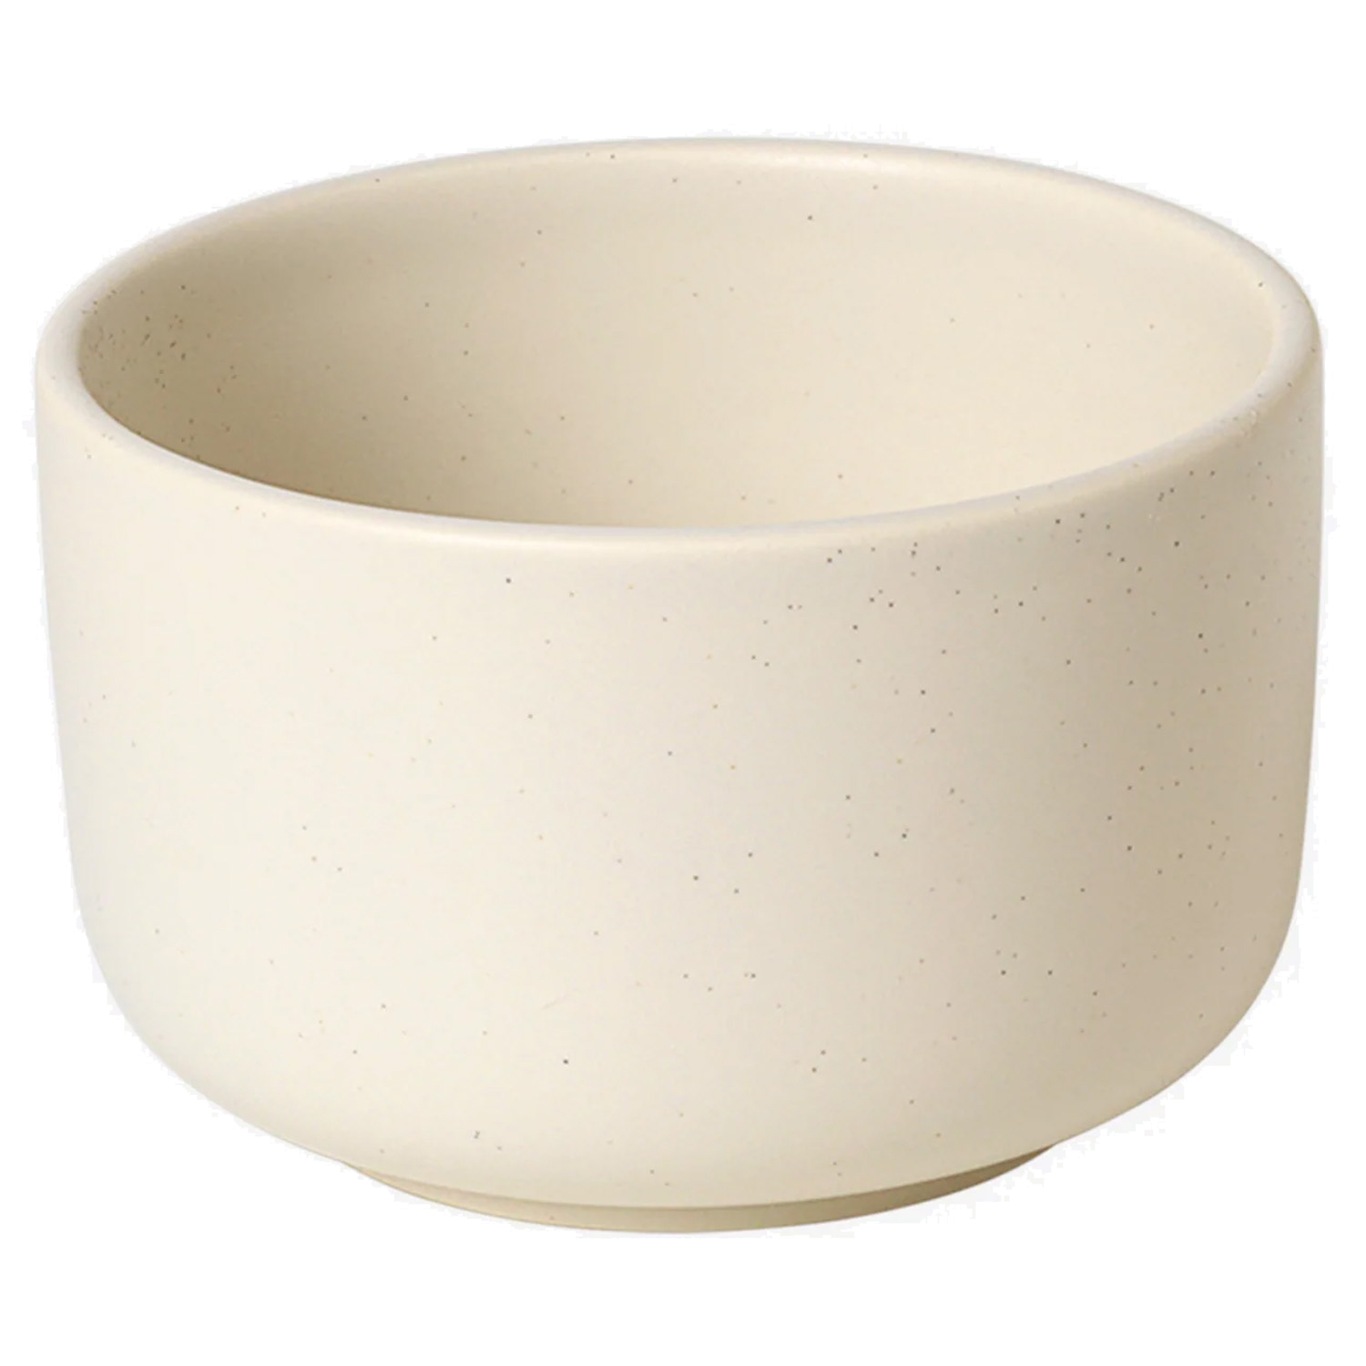 Ceramic Pisu Bowl Ø12 cm, Vanilla White